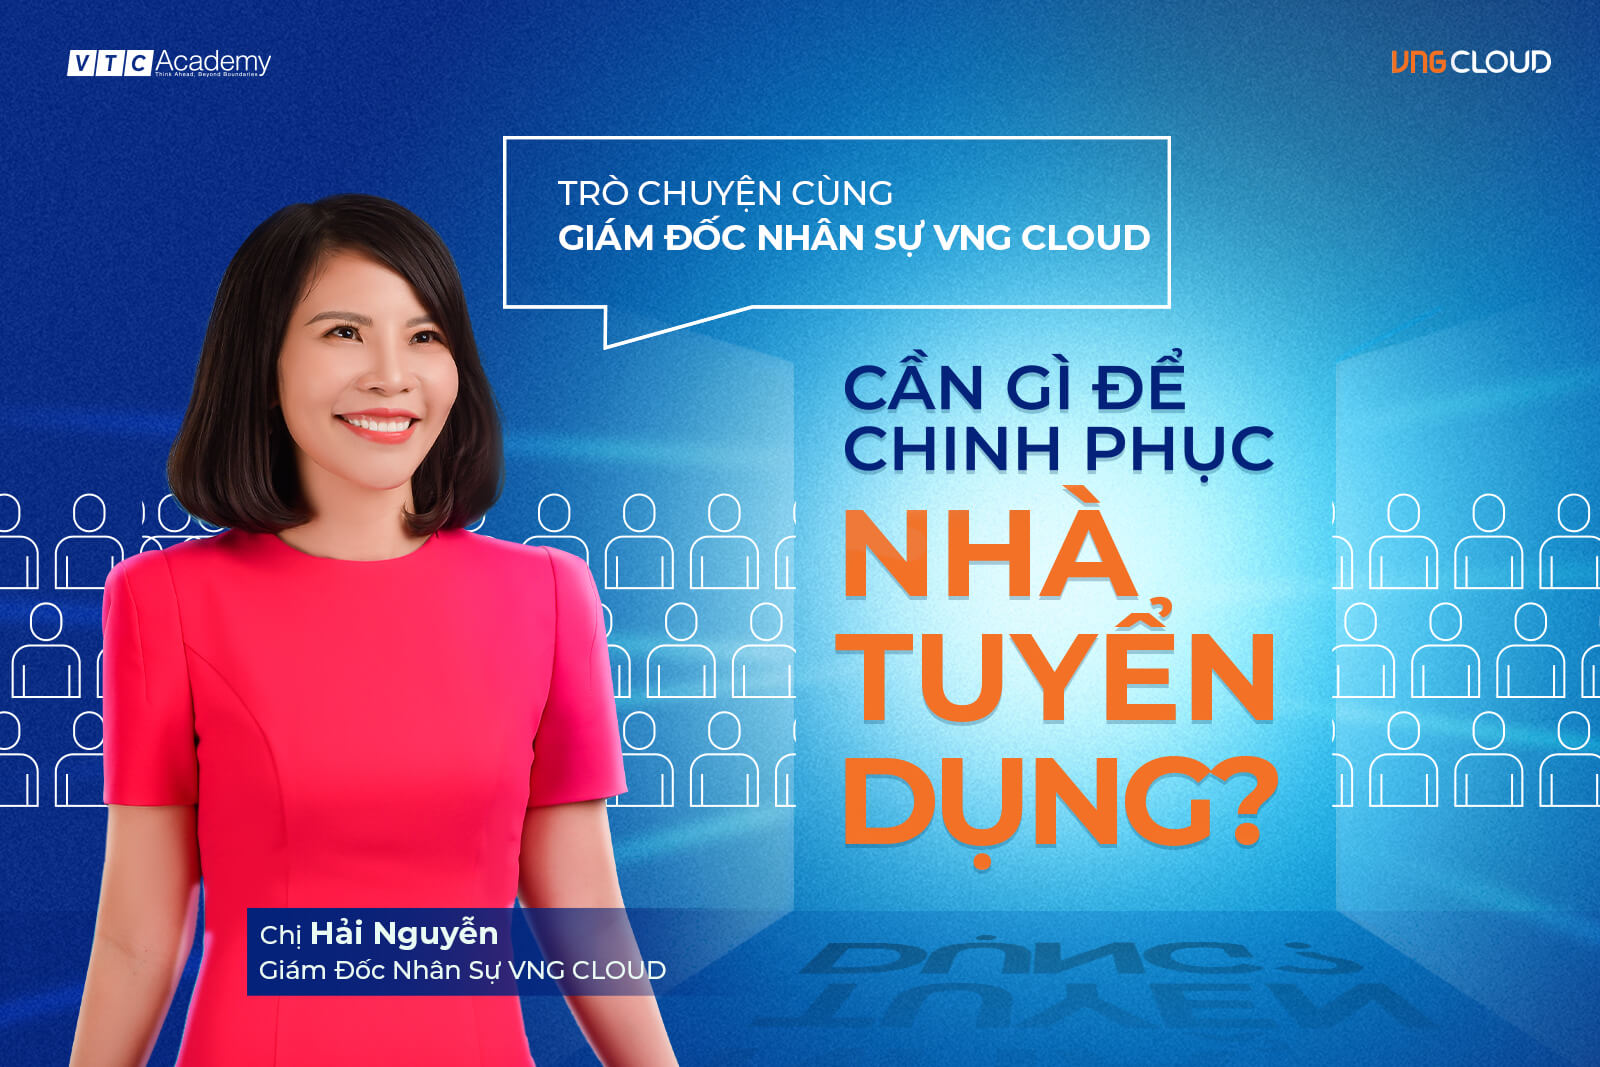 Trò chuyện cùng Giám đốc Nhân sự VNG Cloud - Cần gì để chinh phục nhà tuyển dụng?